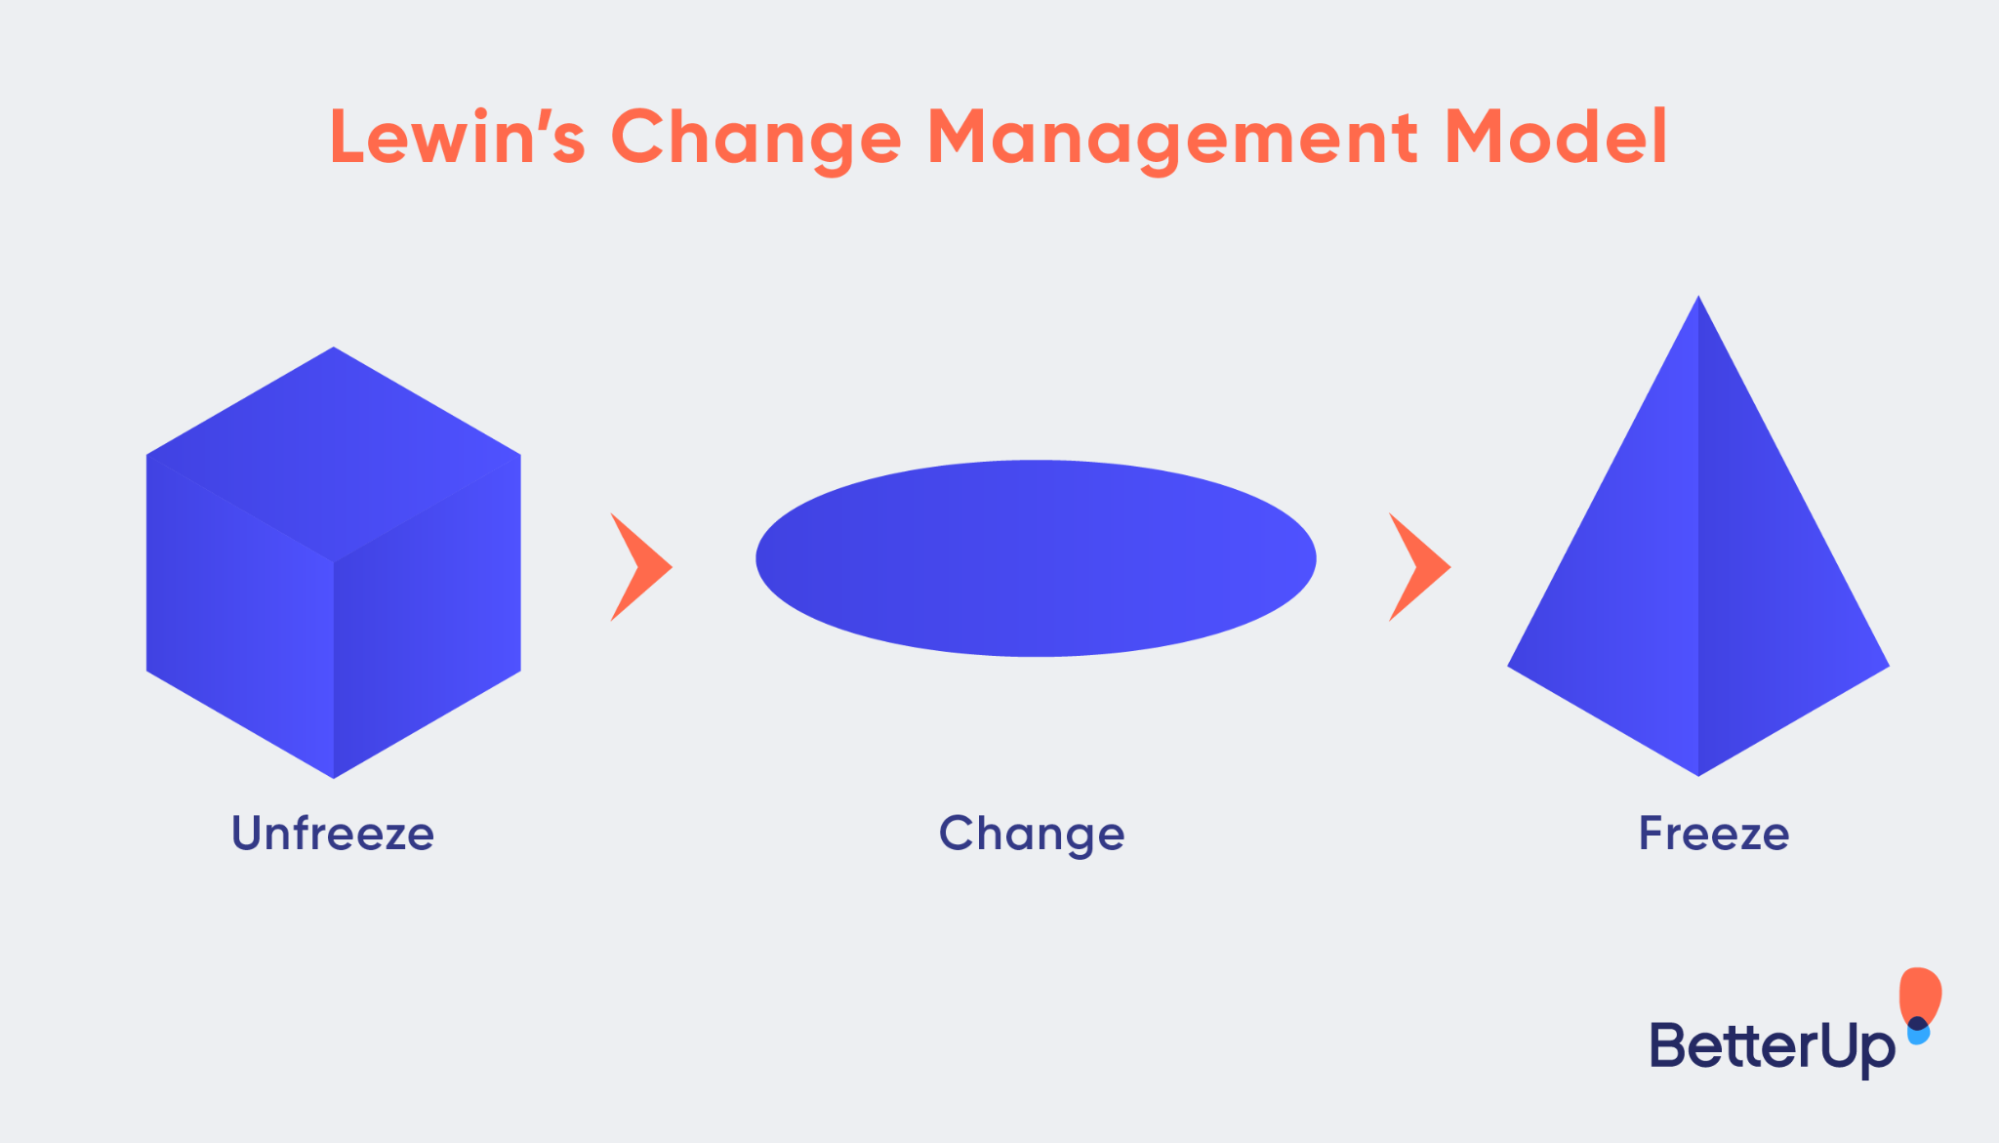 ¿Qué es la gestión del cambio? Conquístalo con esta guía